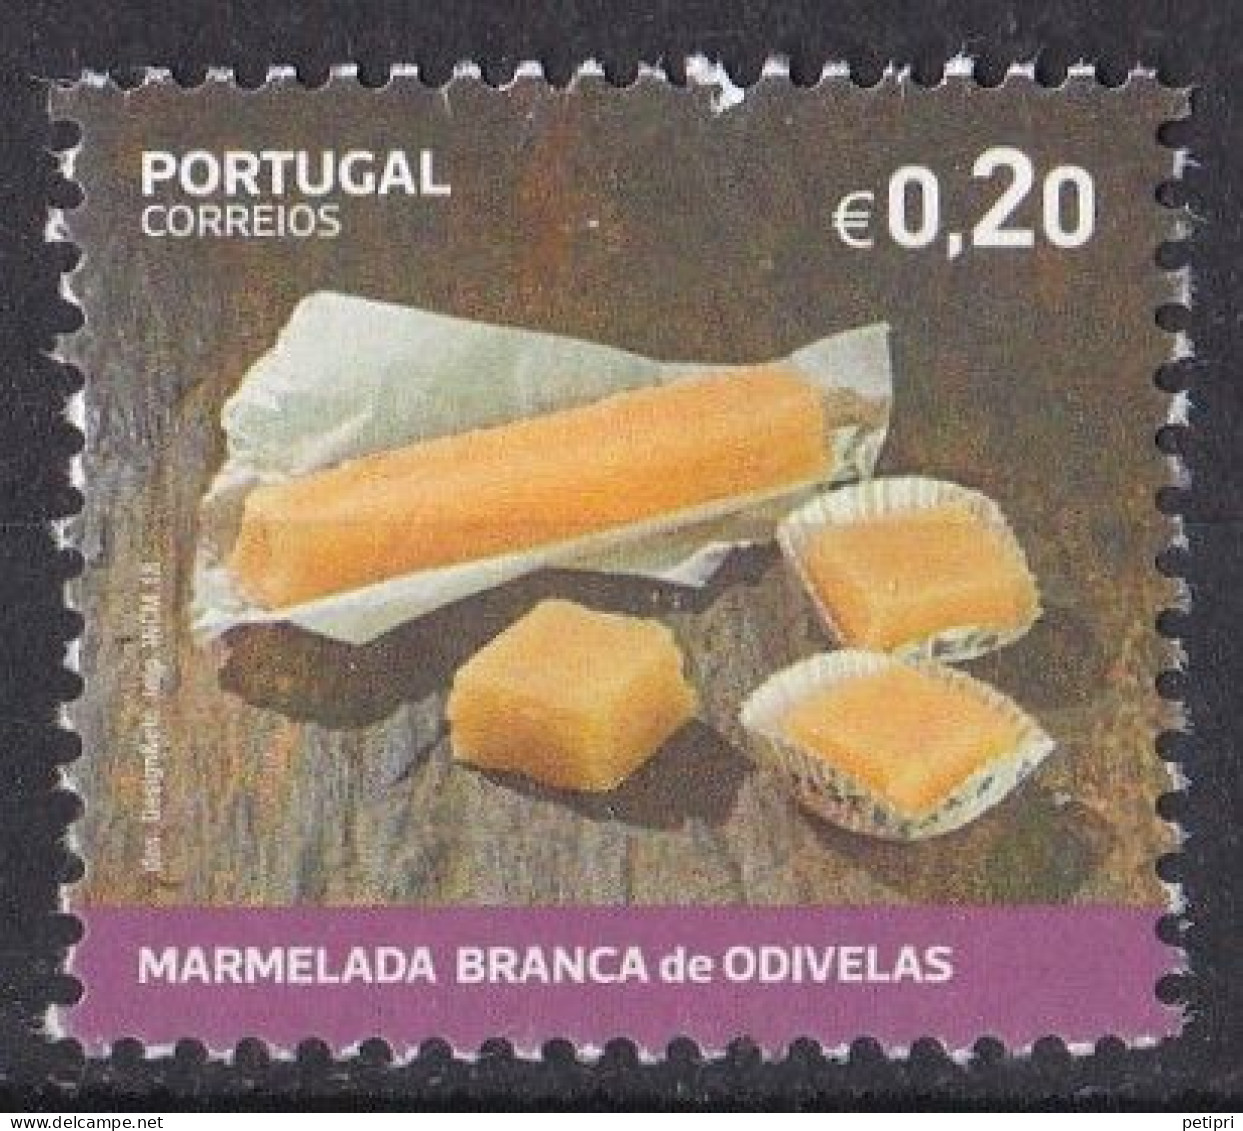 Portugal - République - 2010 - 2019  Y&T  N ° 5003   Oblitéré - Used Stamps